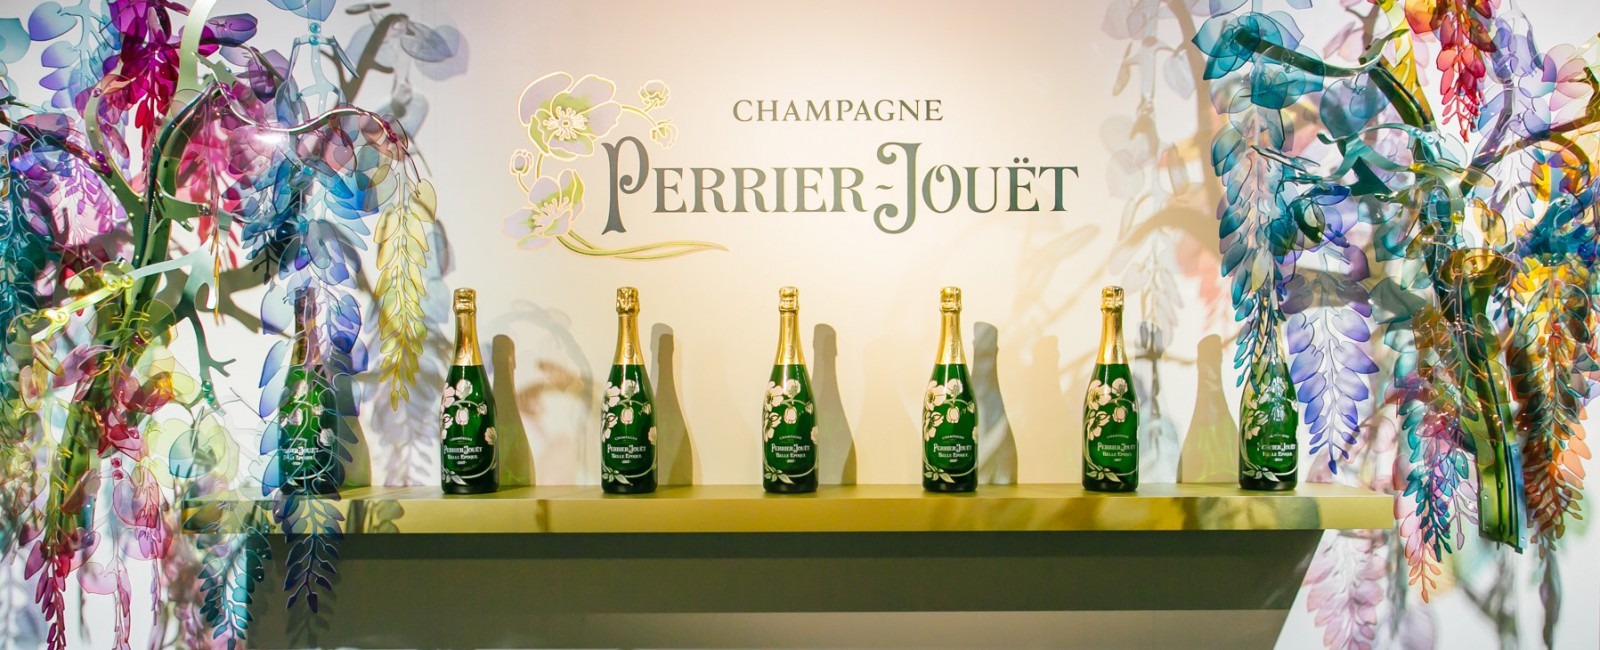 巴黎之花香槟新推“迷人之树”酒具